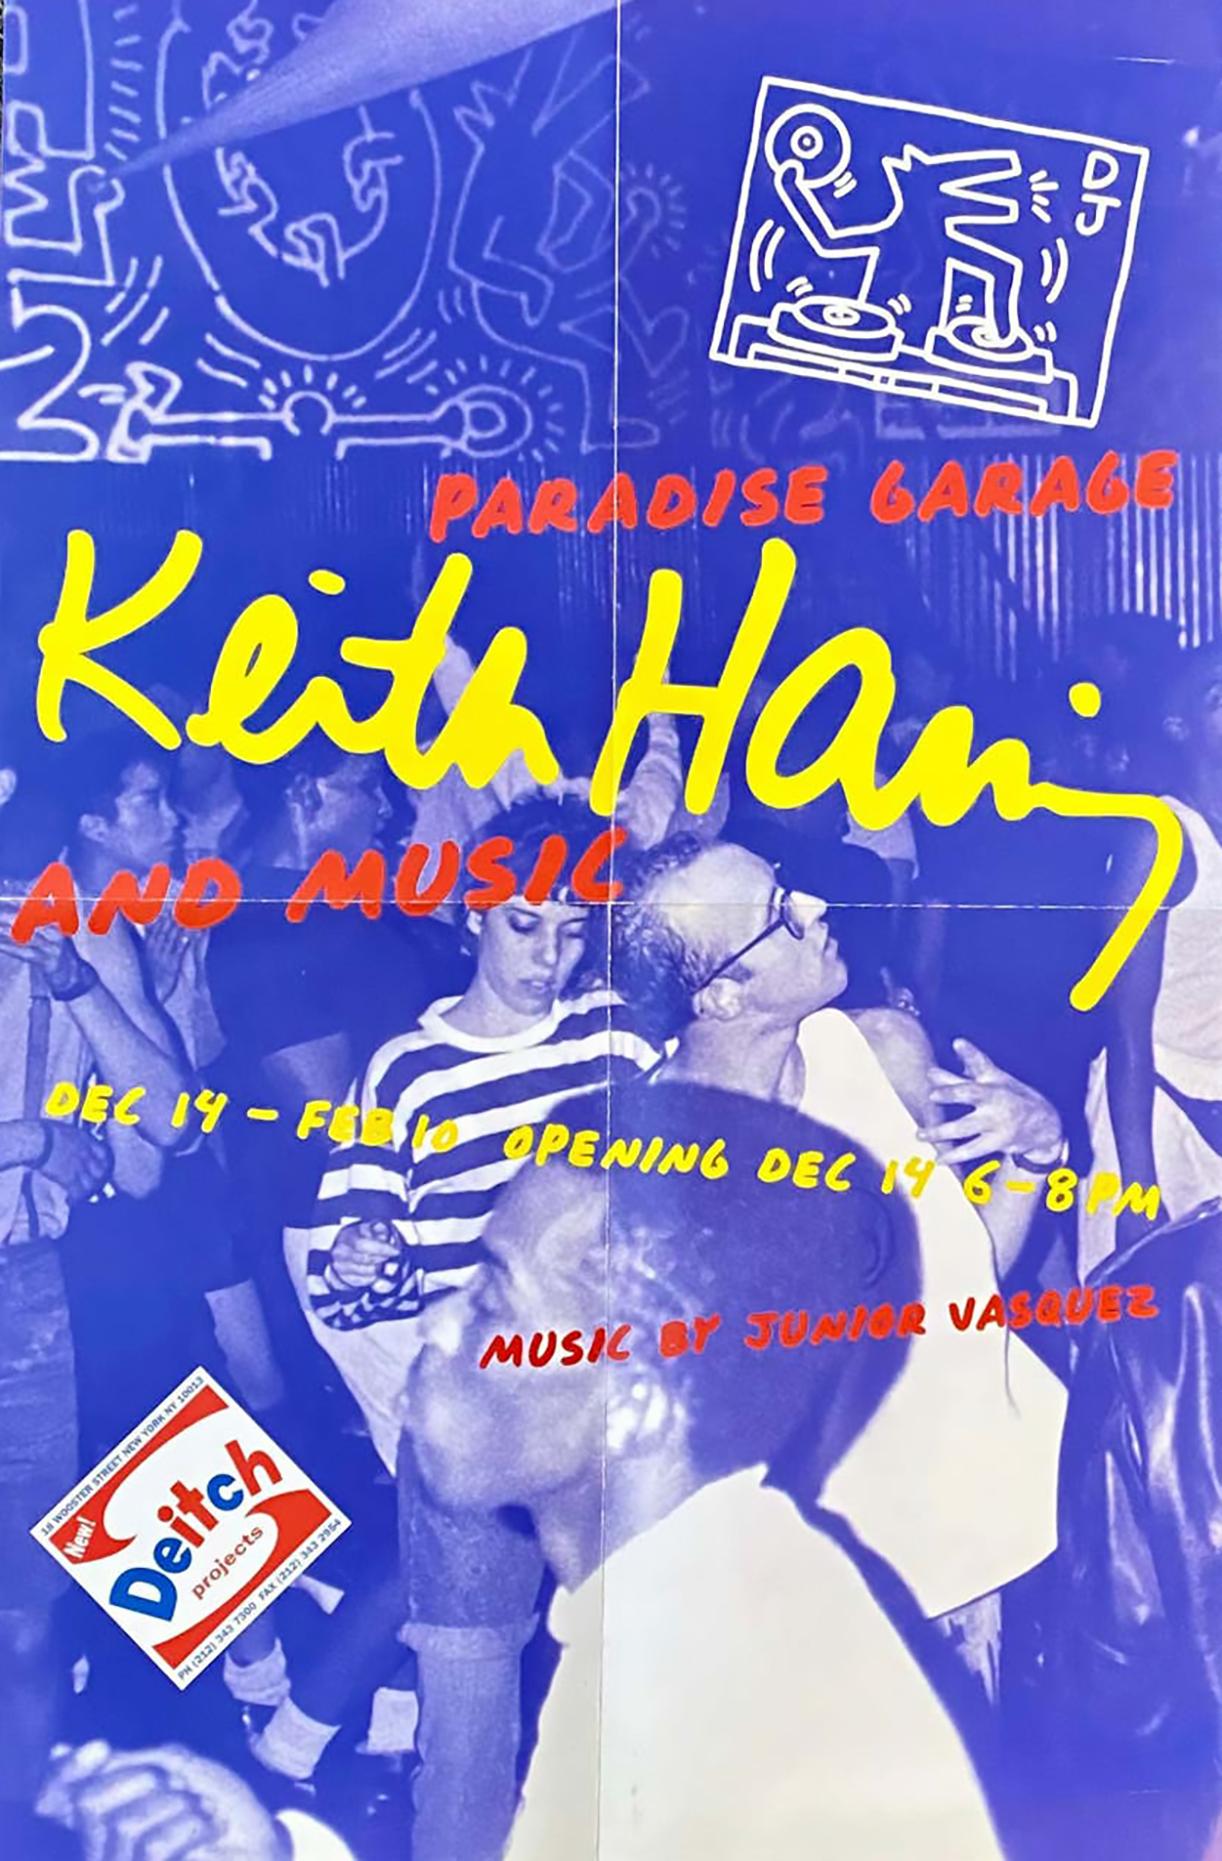 Keith Haring Paradise Garage-Ausstellungsplakat „Keith Haring Jeffrey Deitch“